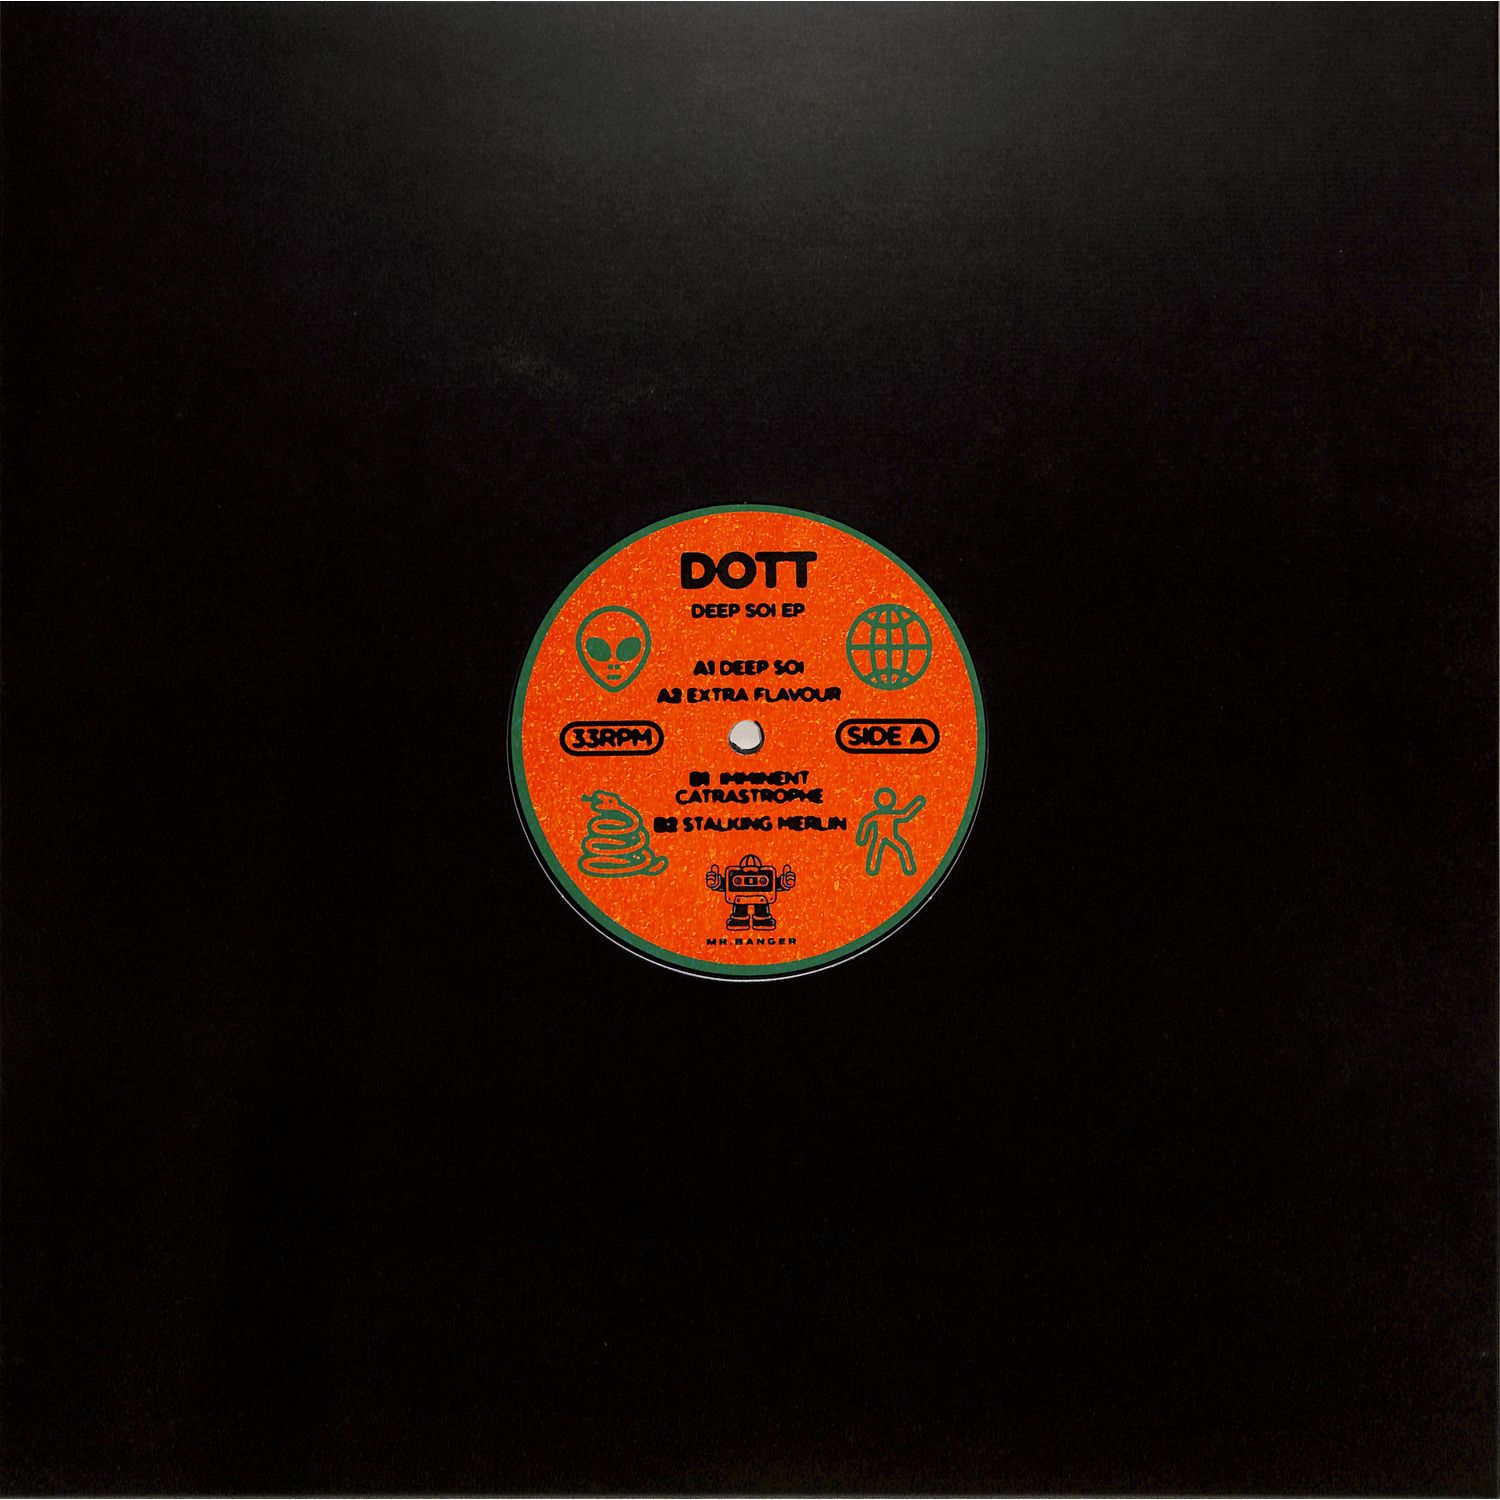 DOOT - Deep Soi EP